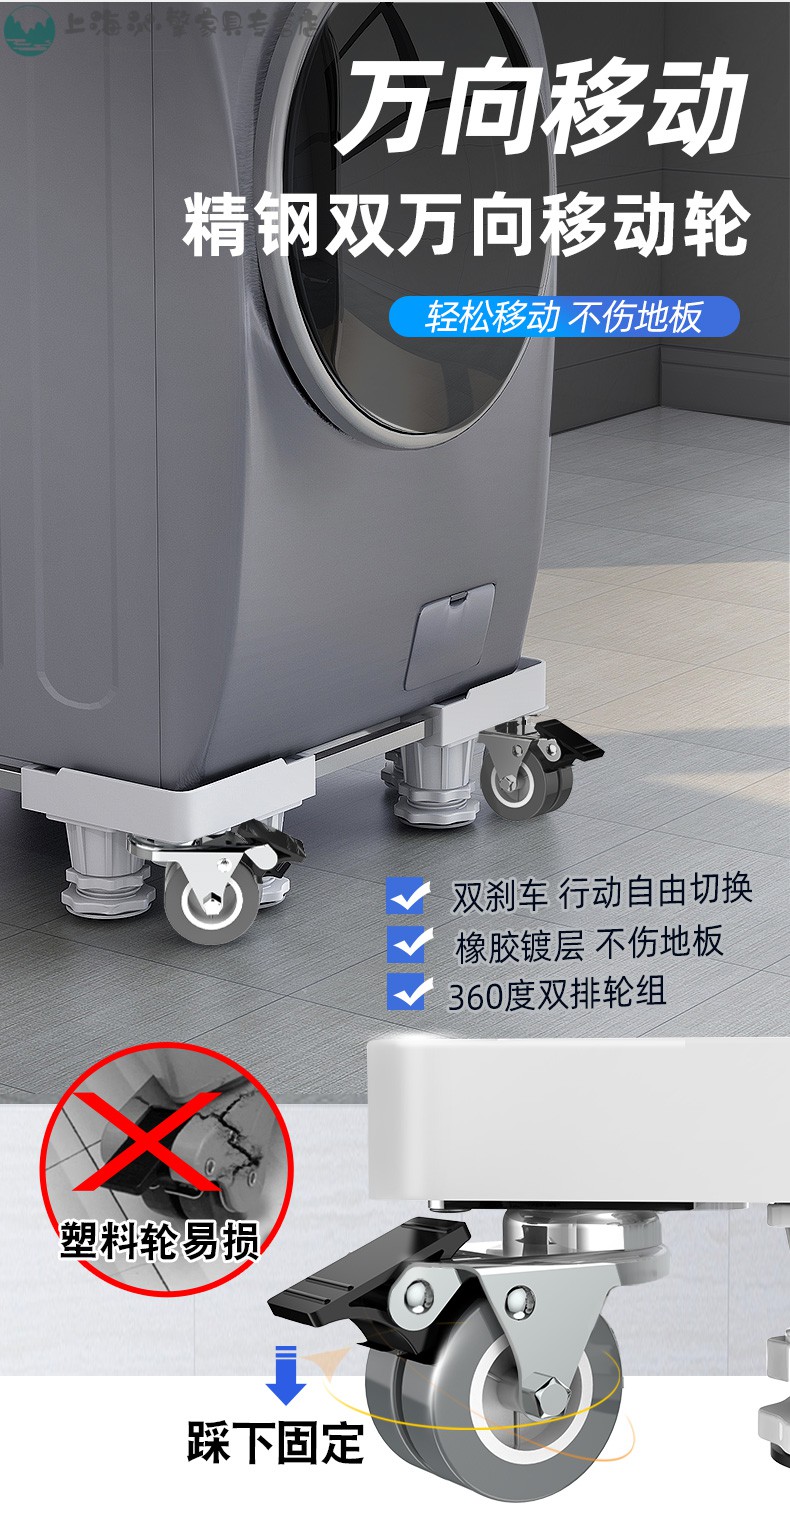 滑轮洗衣机底座通用置物架全自动托架冰箱移动万向轮支架垫高架子脚架